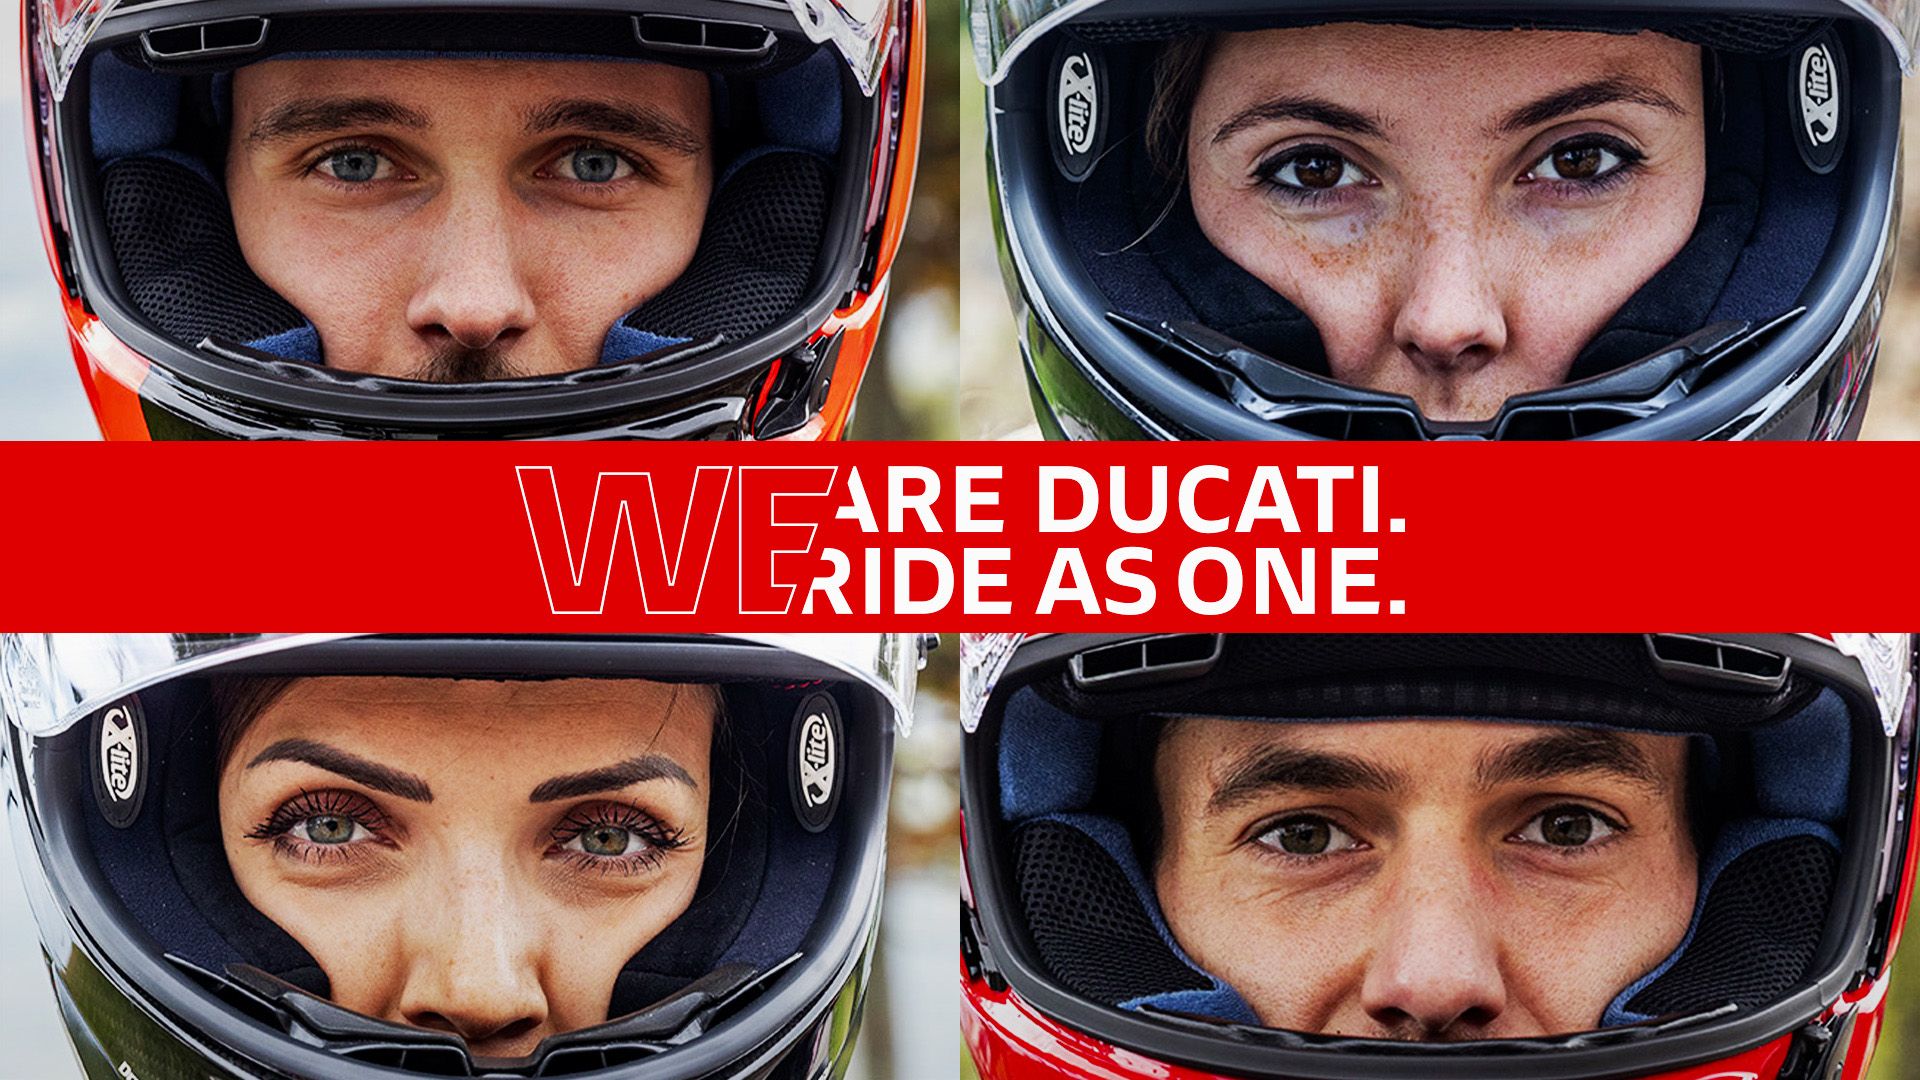 Οι φίλοι της Ducati γιόρτασαν μαζί!